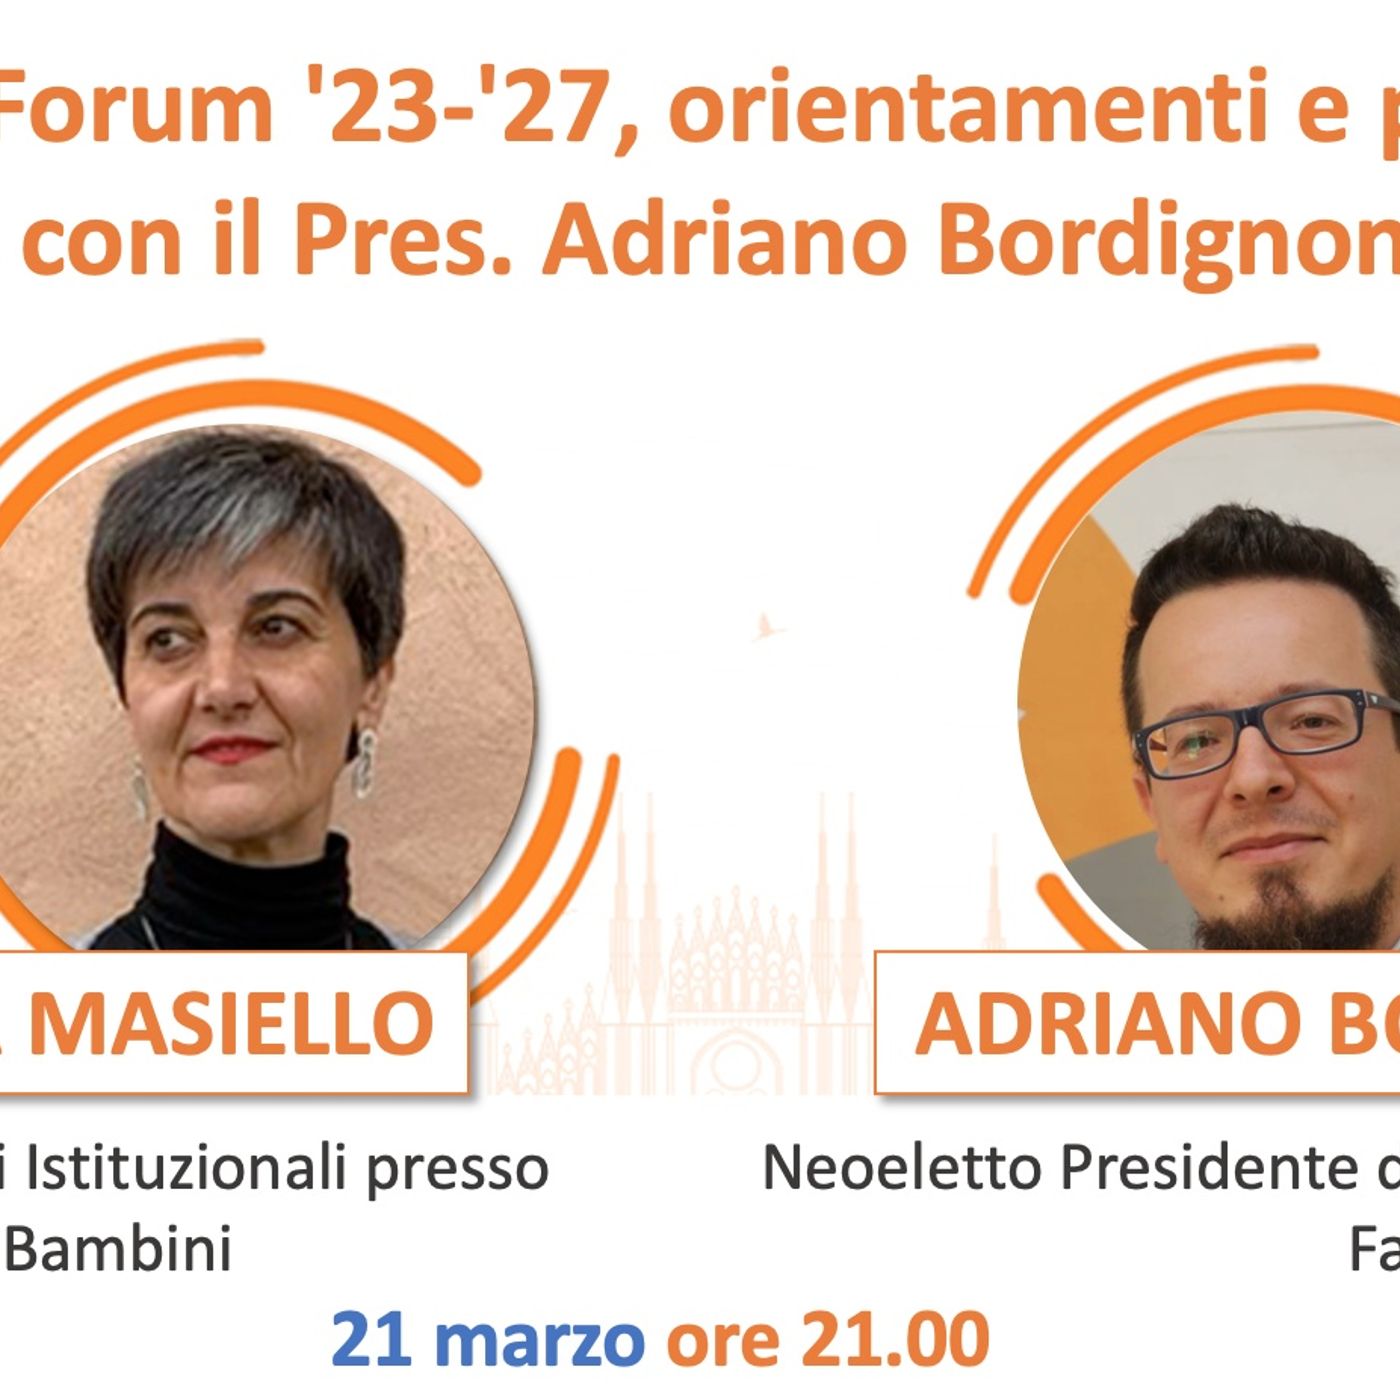 FarisTalk: Forum '23 - '27, orientamenti e prospettive con il Pres. Adiano Bordignon